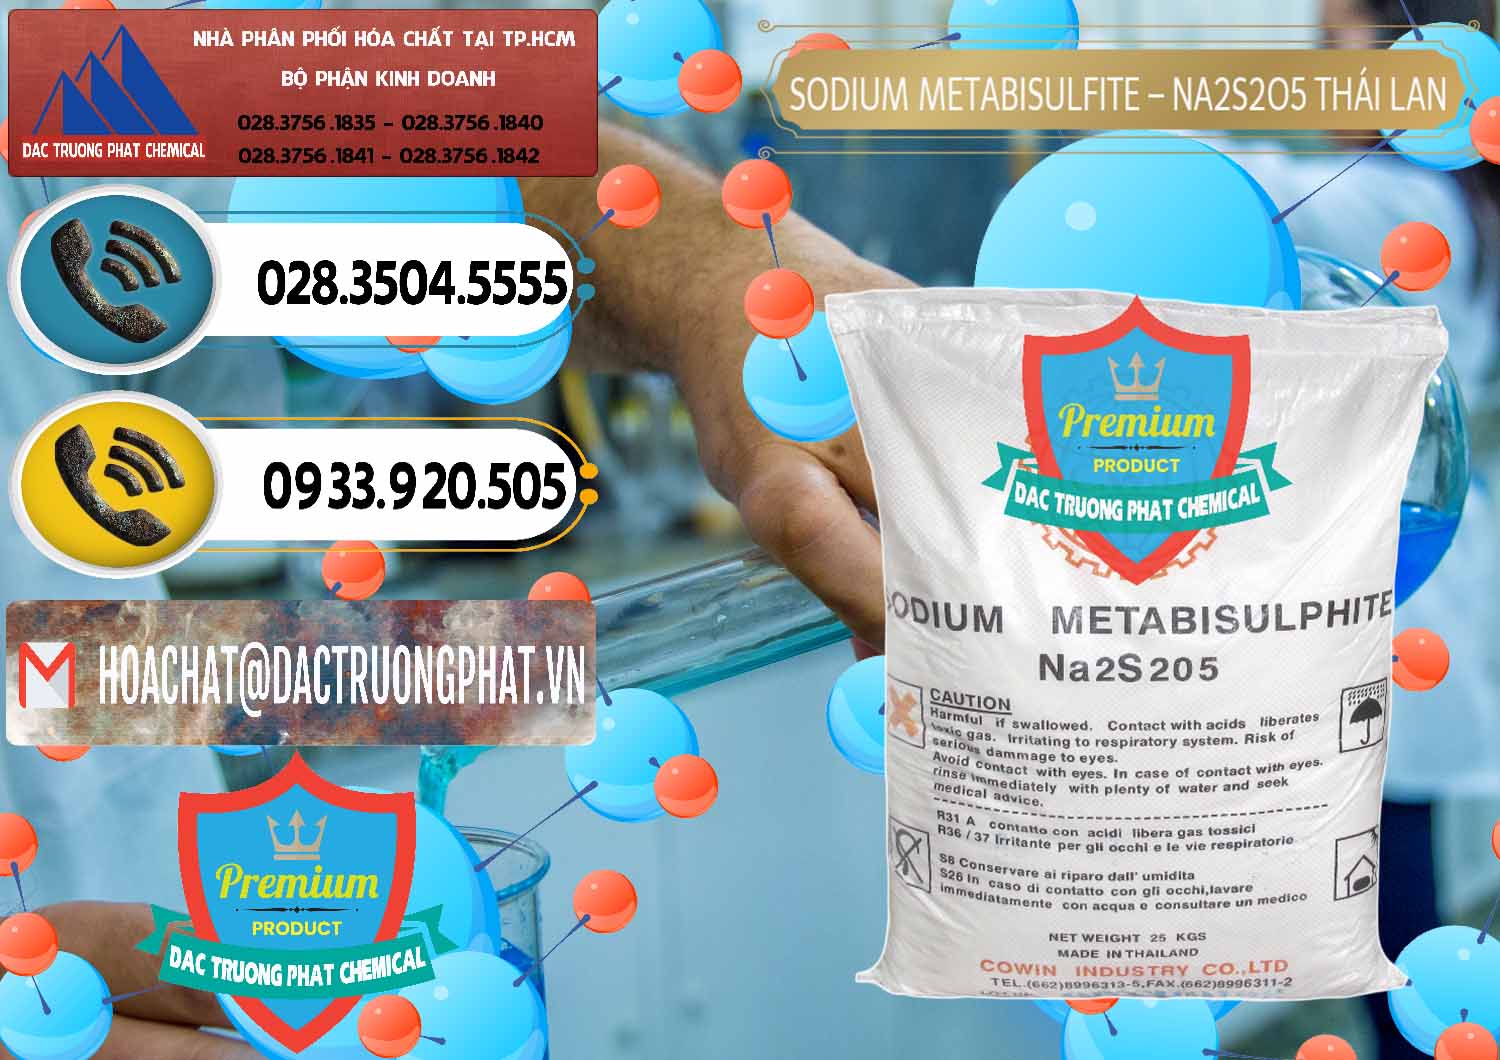 Chuyên bán và cung cấp Sodium Metabisulfite - NA2S2O5 Thái Lan Cowin - 0145 - Công ty chuyên bán và cung cấp hóa chất tại TP.HCM - hoachatdetnhuom.vn